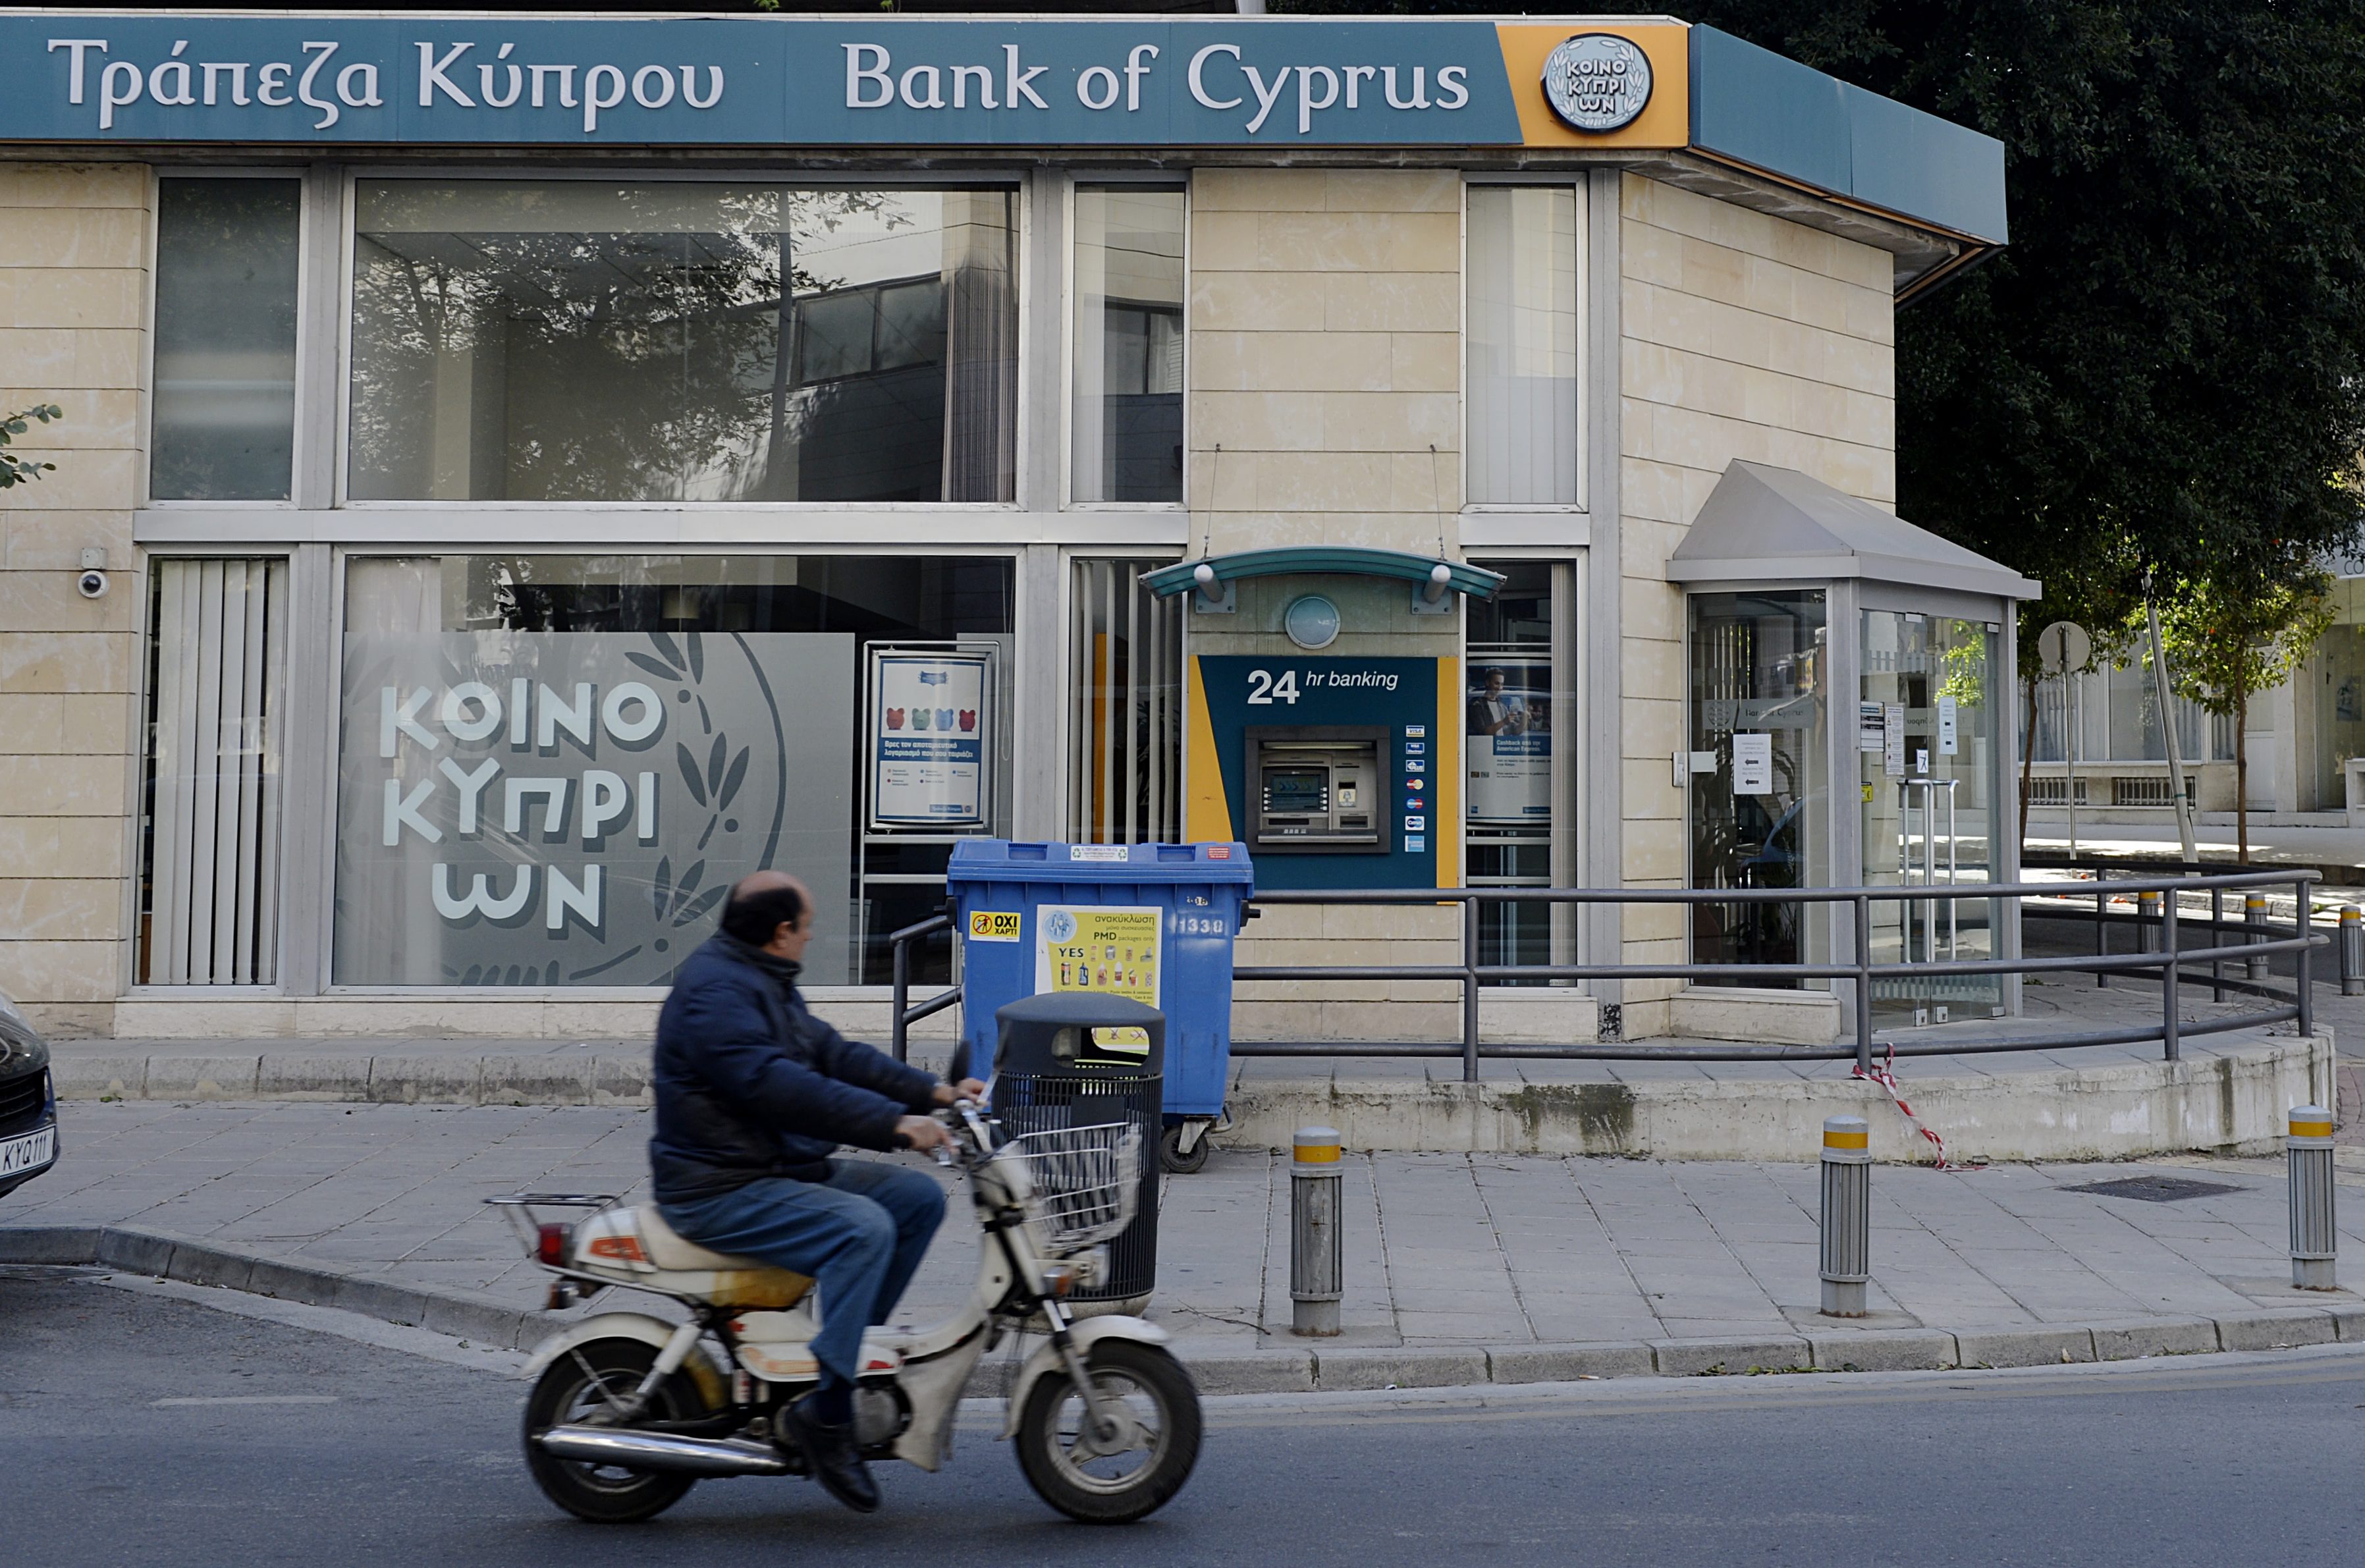 Кипърските банки са затворени от събота, за да се предотврати изтеглянето на пари от тях